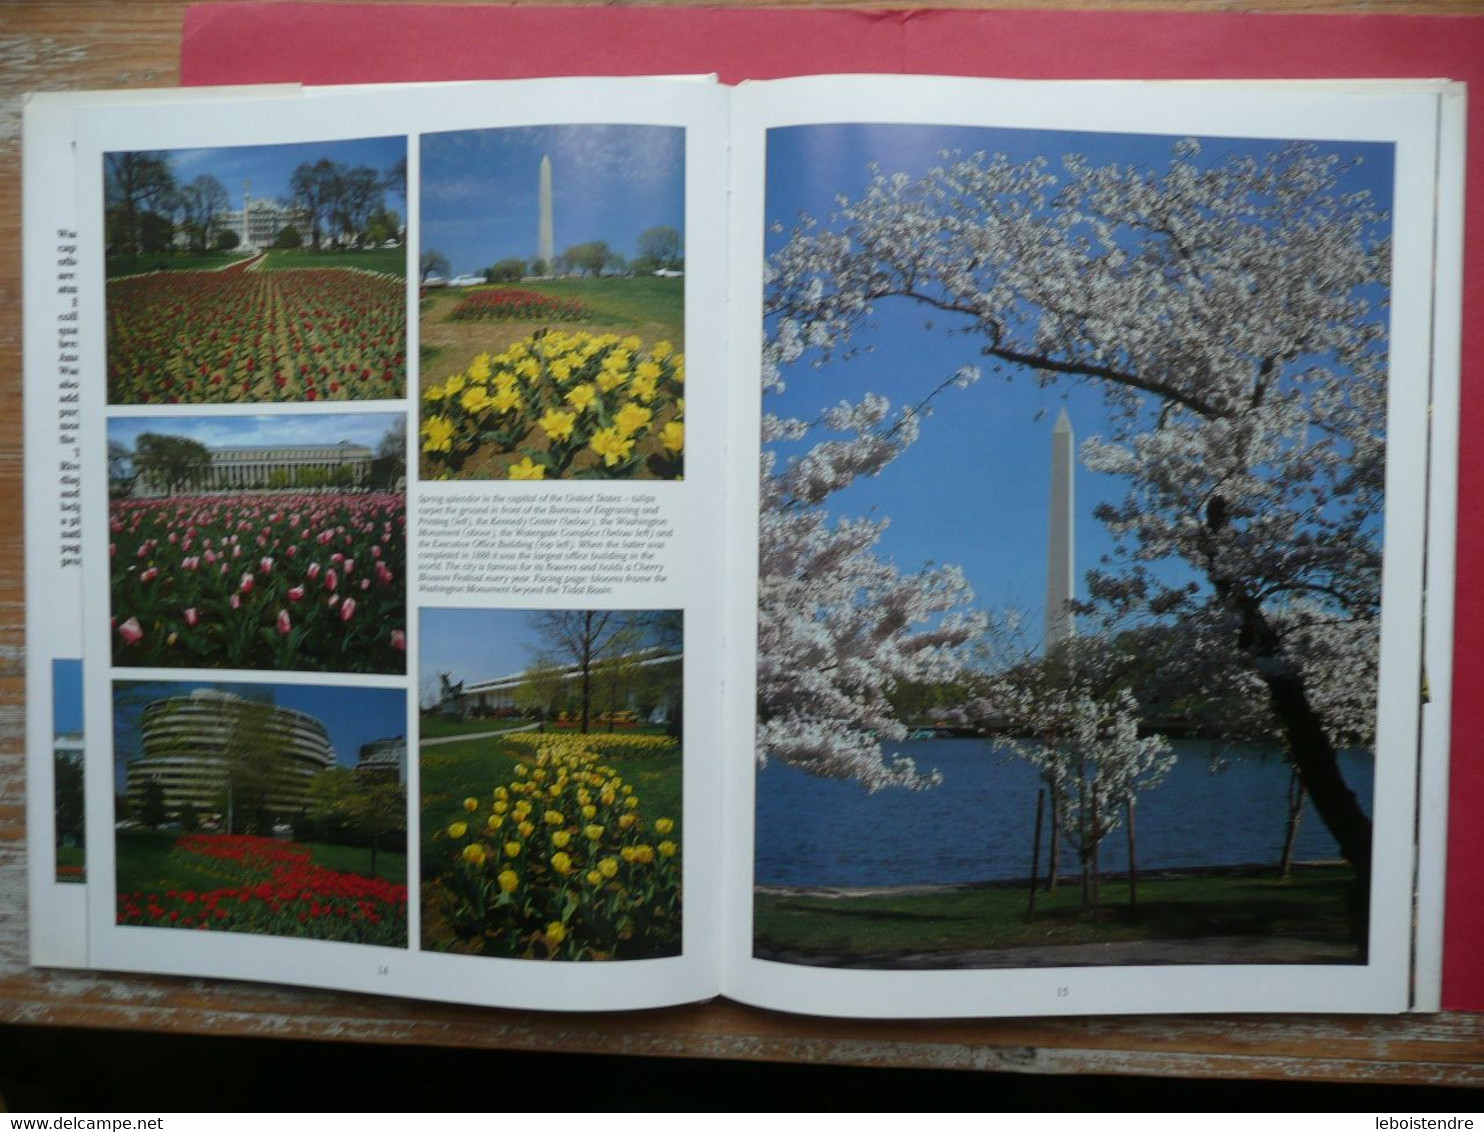 WASHINGTON D. C. A PICTURE MEMORY 1990 CRESCENT BOOKS BILL HARRIS LOUISE HOUGHTON - Amérique Du Nord